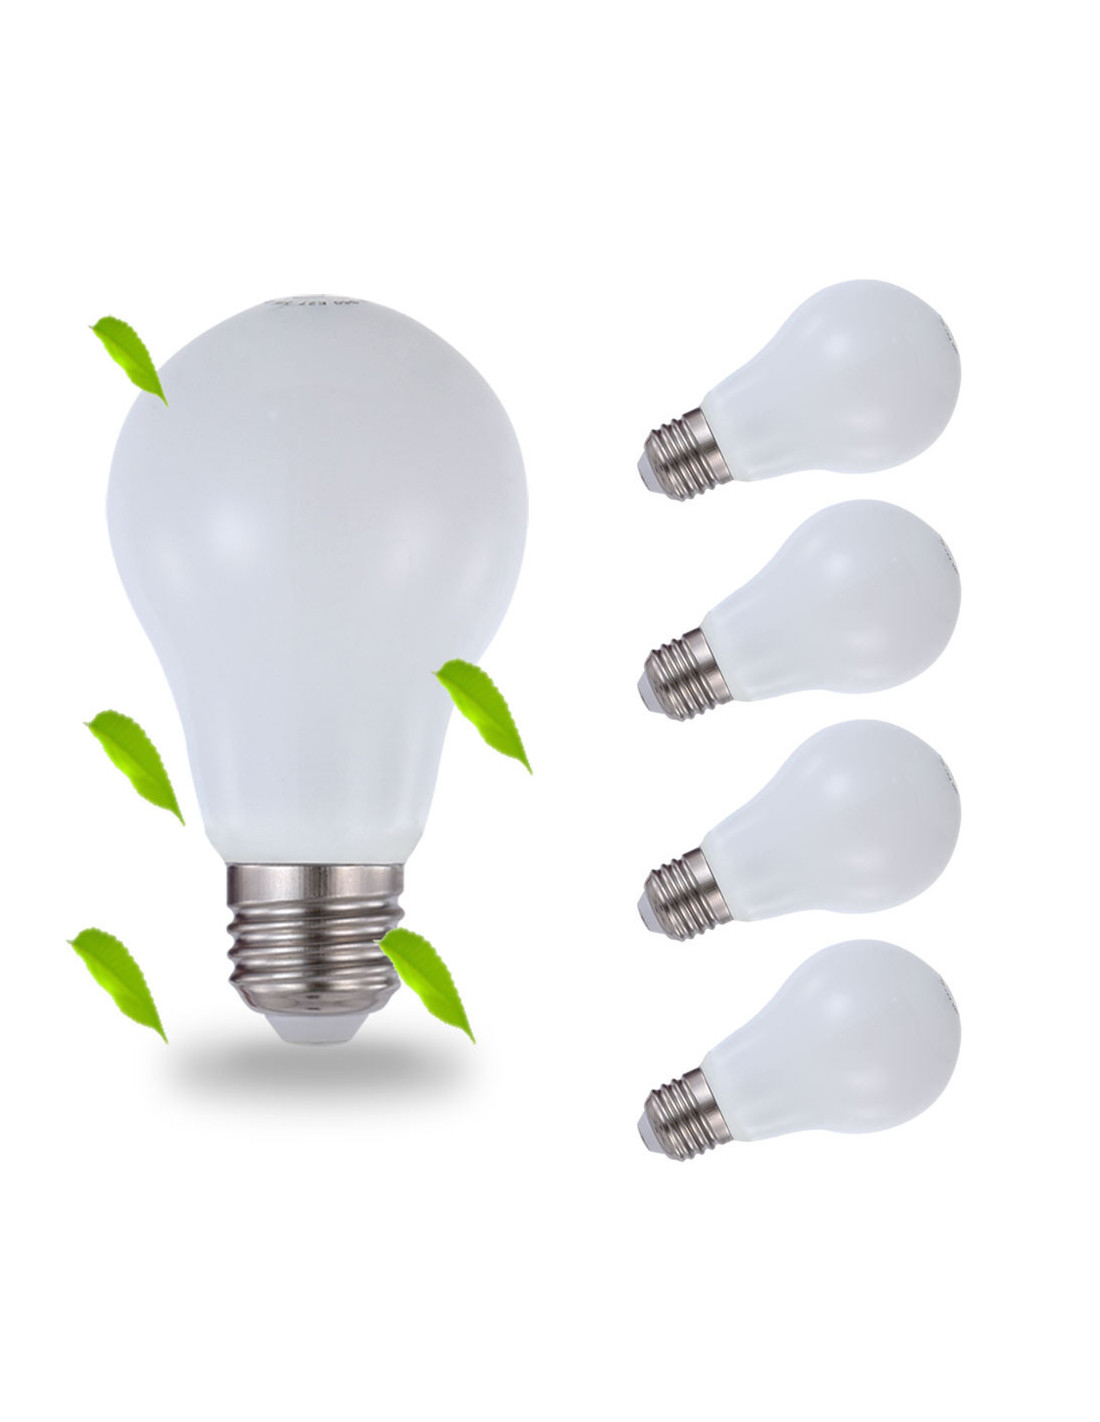 Ampoule DEL LUXBIEN 5W remplace 40 watts E27, 5W 400 lumens dimmable [3000K - 4000K - 6000K]